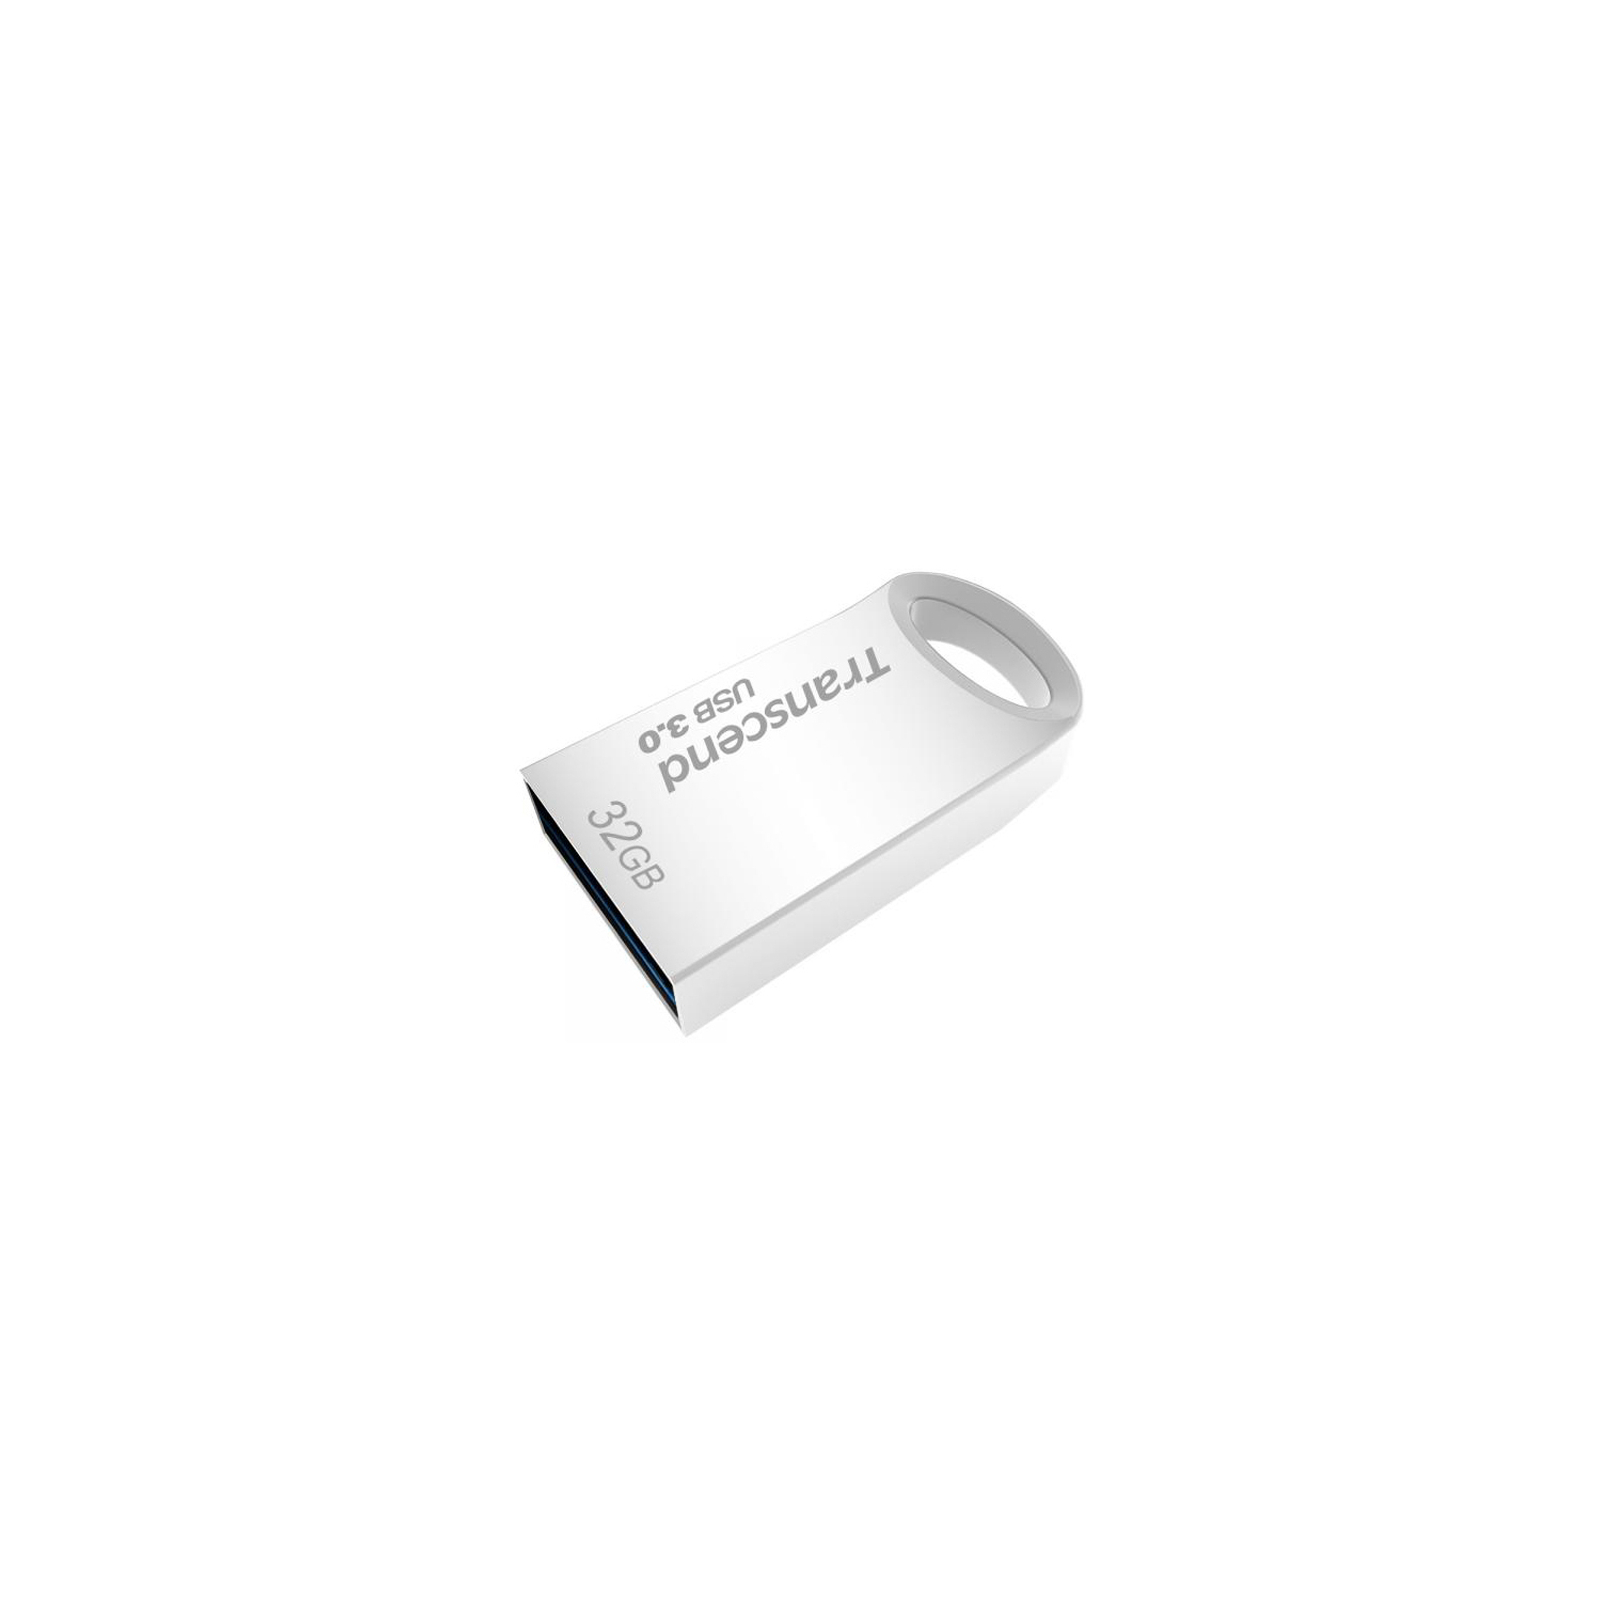 USB флеш накопитель Transcend 32GB JetFlash 710 Metal Gold USB 3.0 (TS32GJF710G) изображение 3